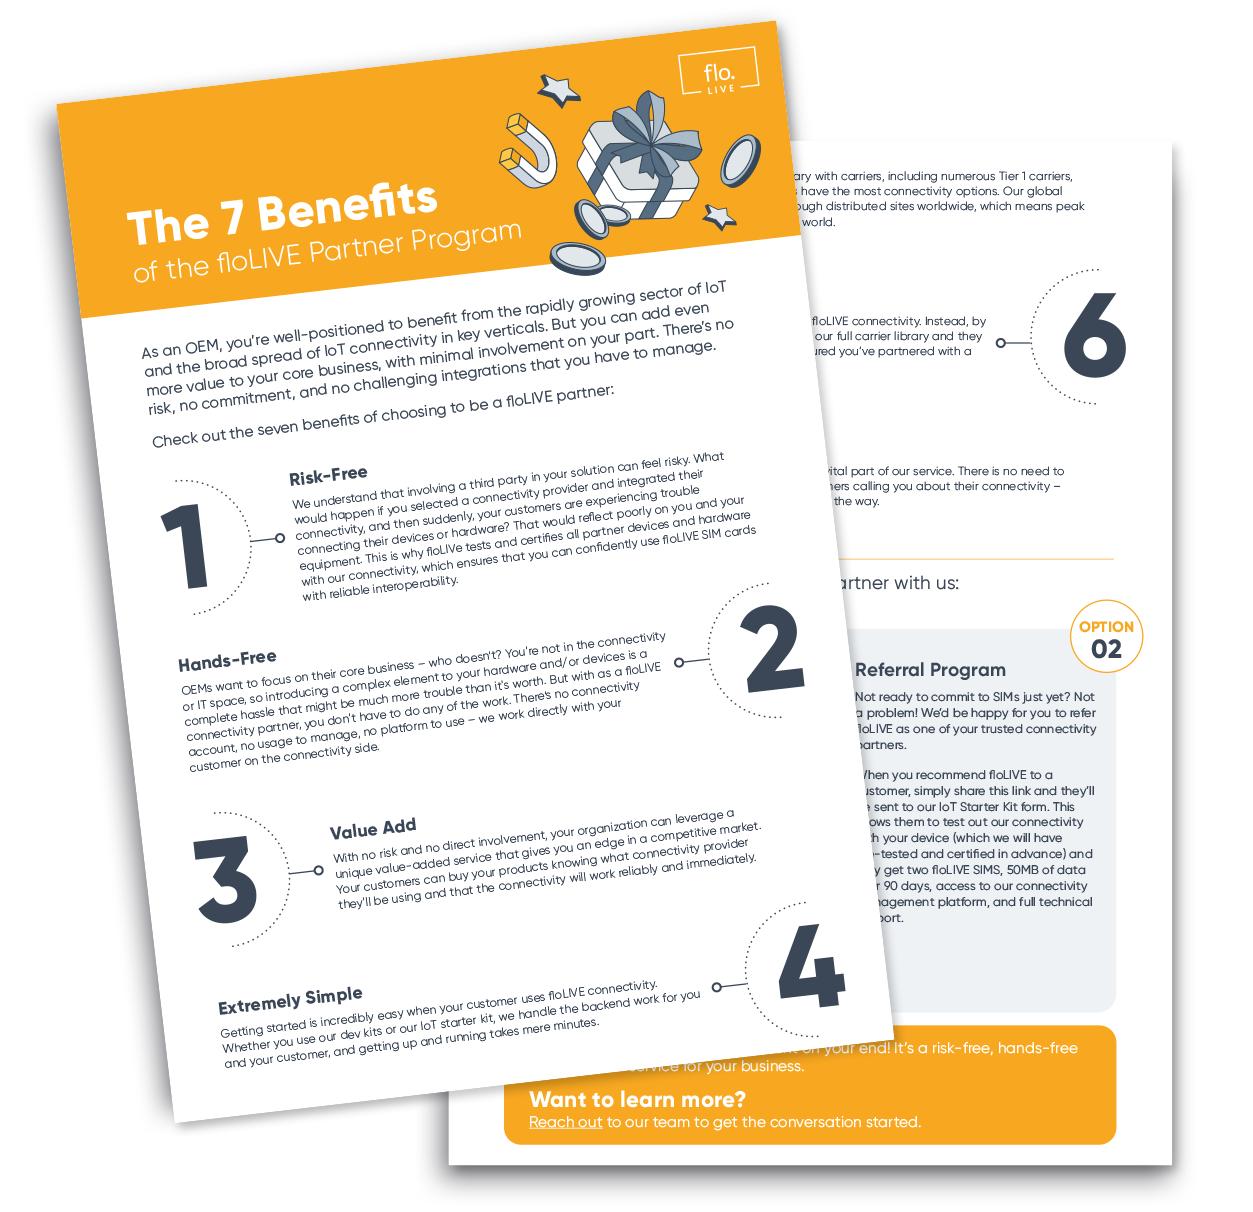 The 7 Benefits of the floLIVE Partner Program image